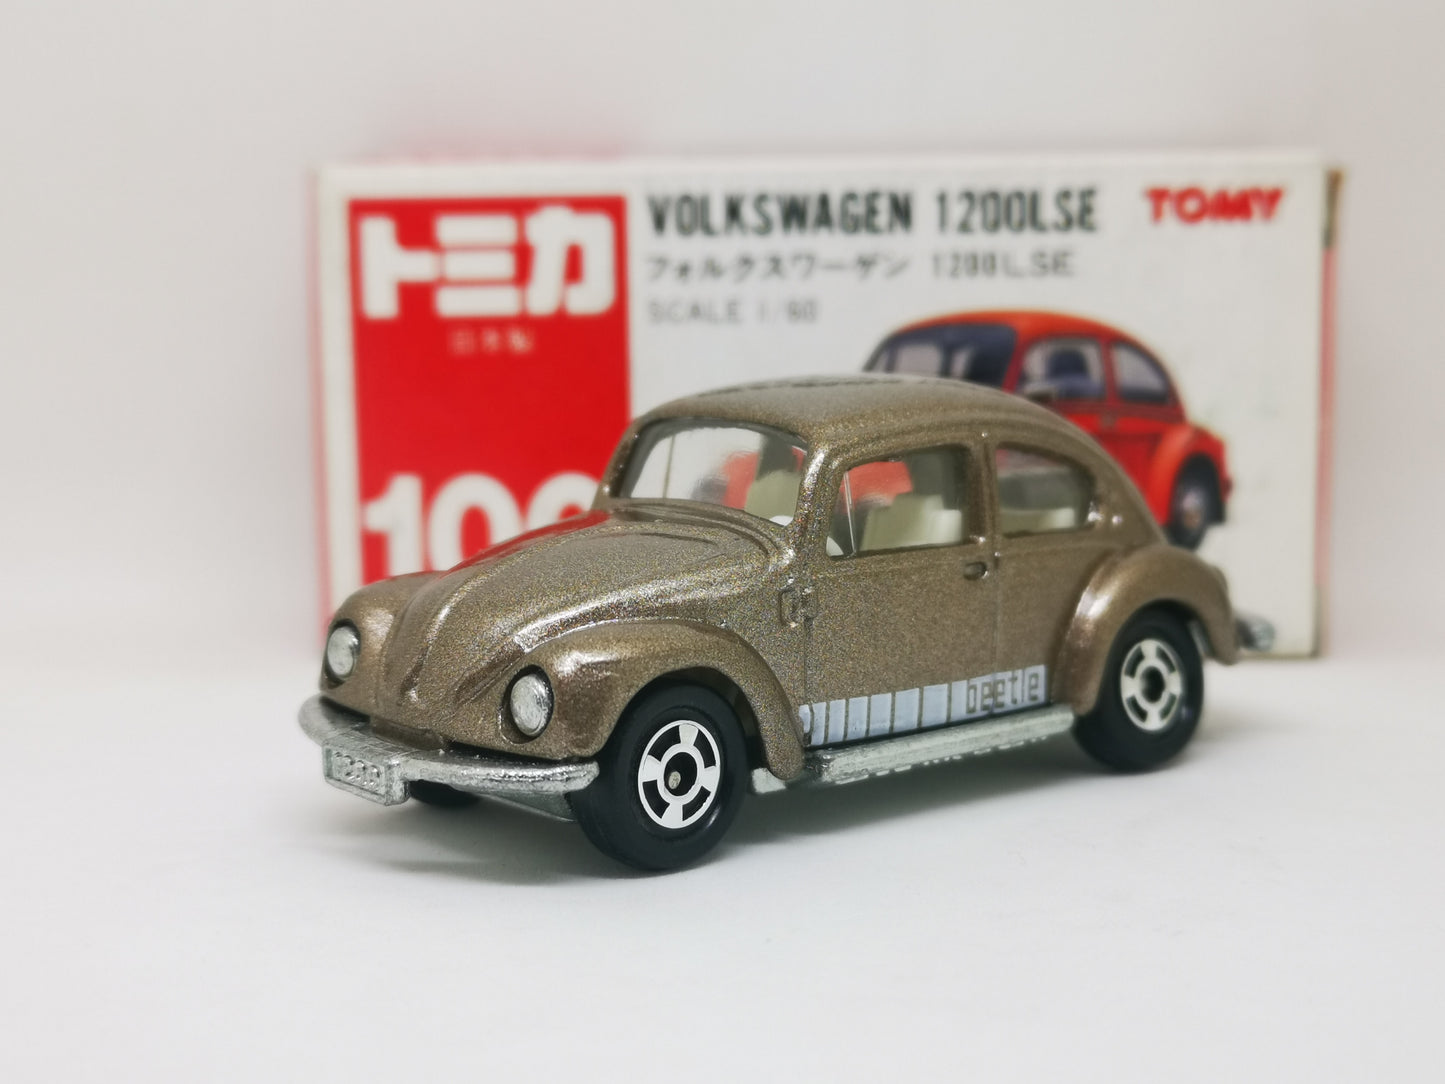 Tomica No.100 Volkswagen 1200LSE Beetle